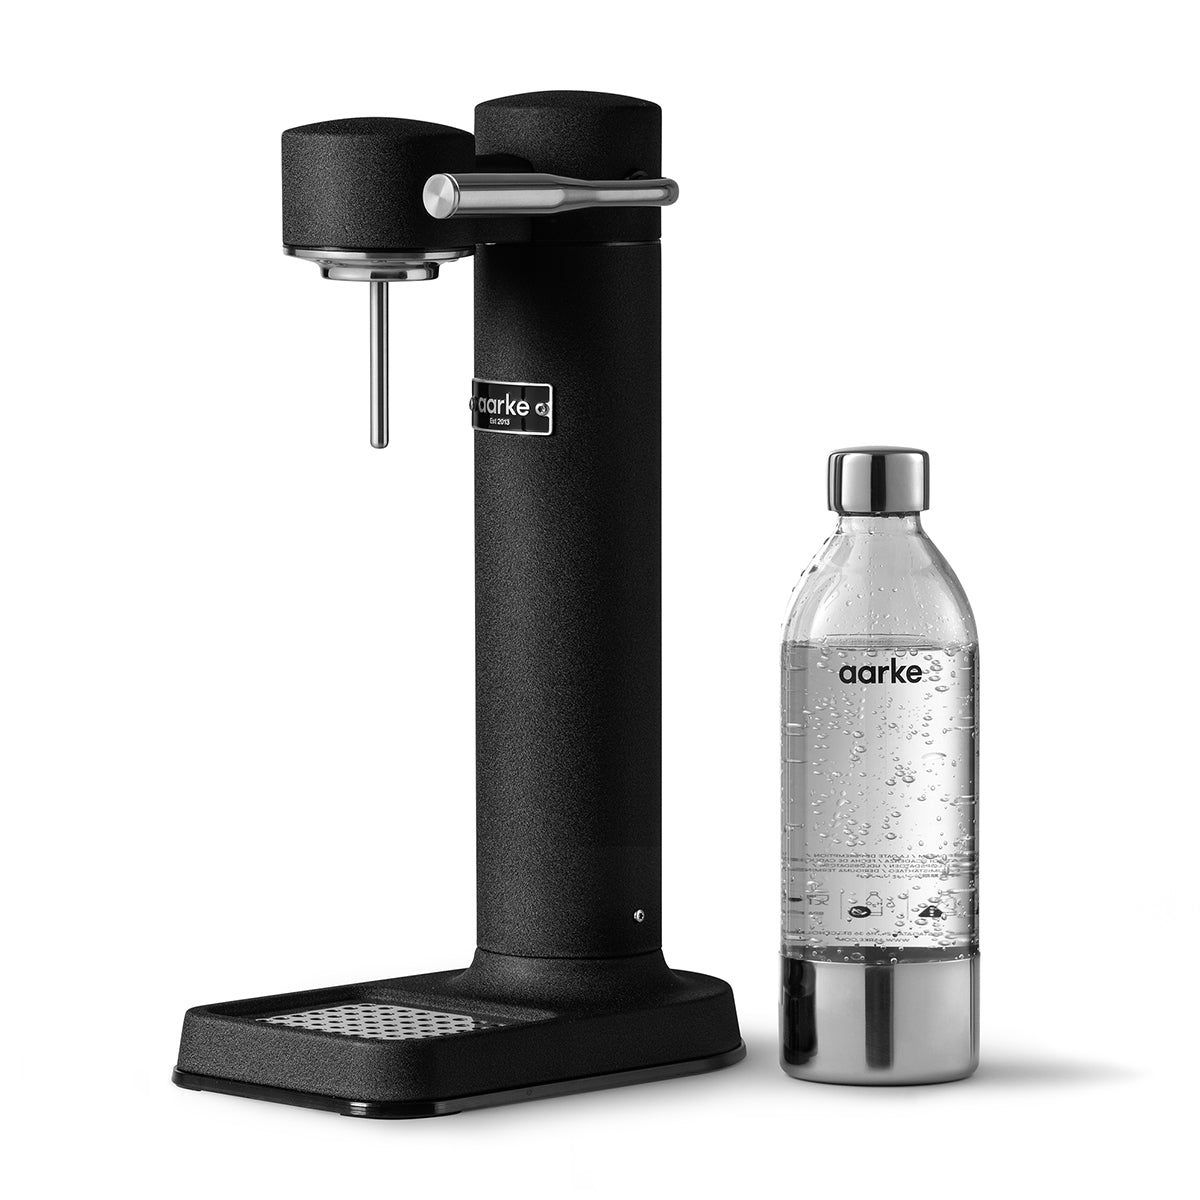 Aarke Carbonator 3 Sparkling Water Maker – Matte Black